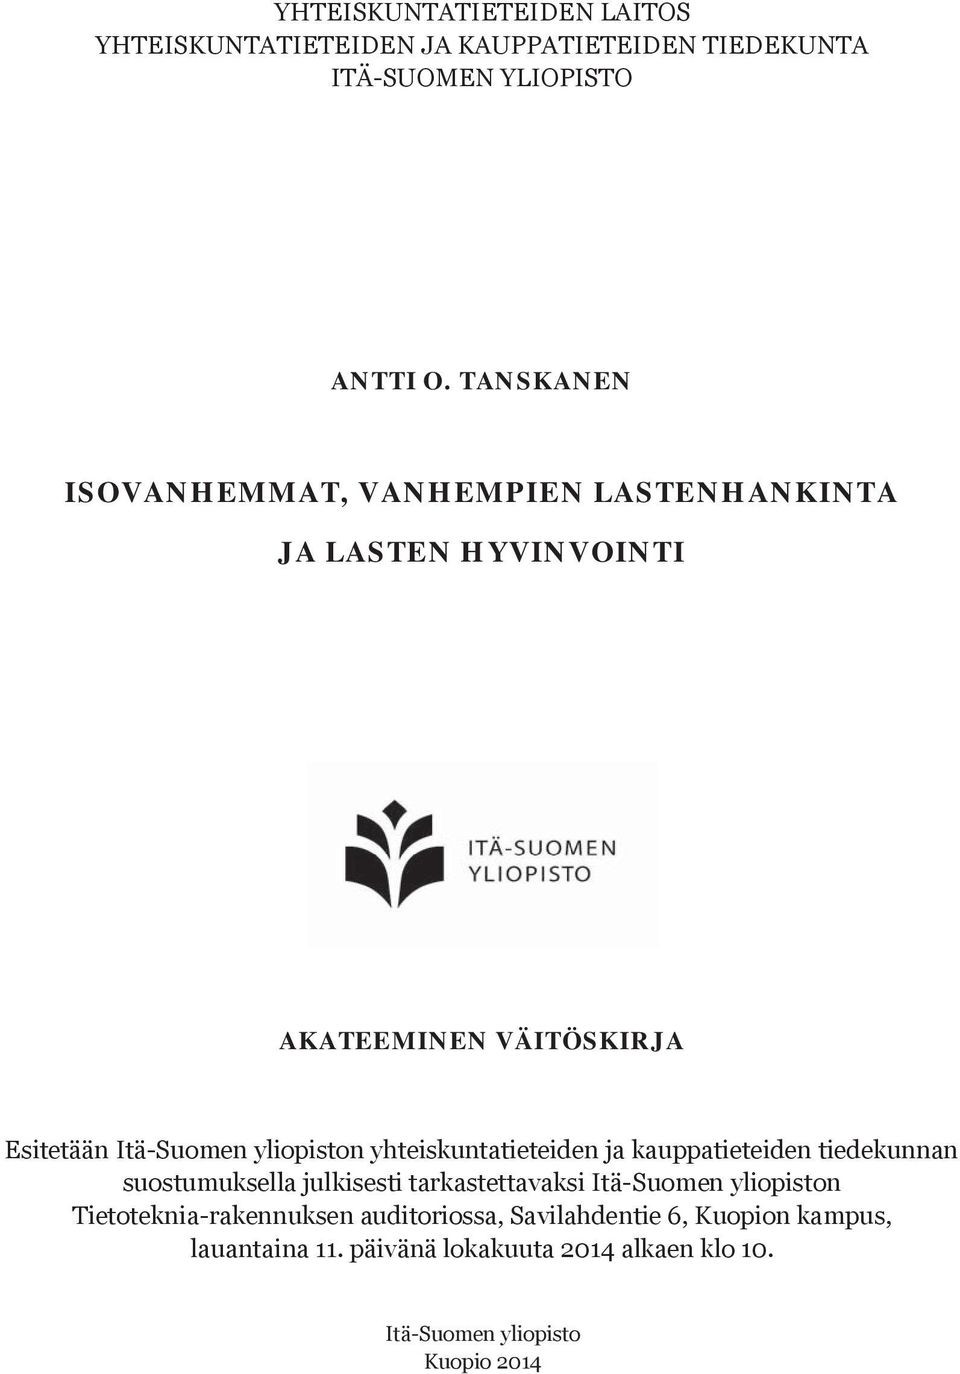 yhteiskuntatieteiden ja kauppatieteiden tiedekunnan suostumuksella julkisesti tarkastettavaksi Itä-Suomen yliopiston